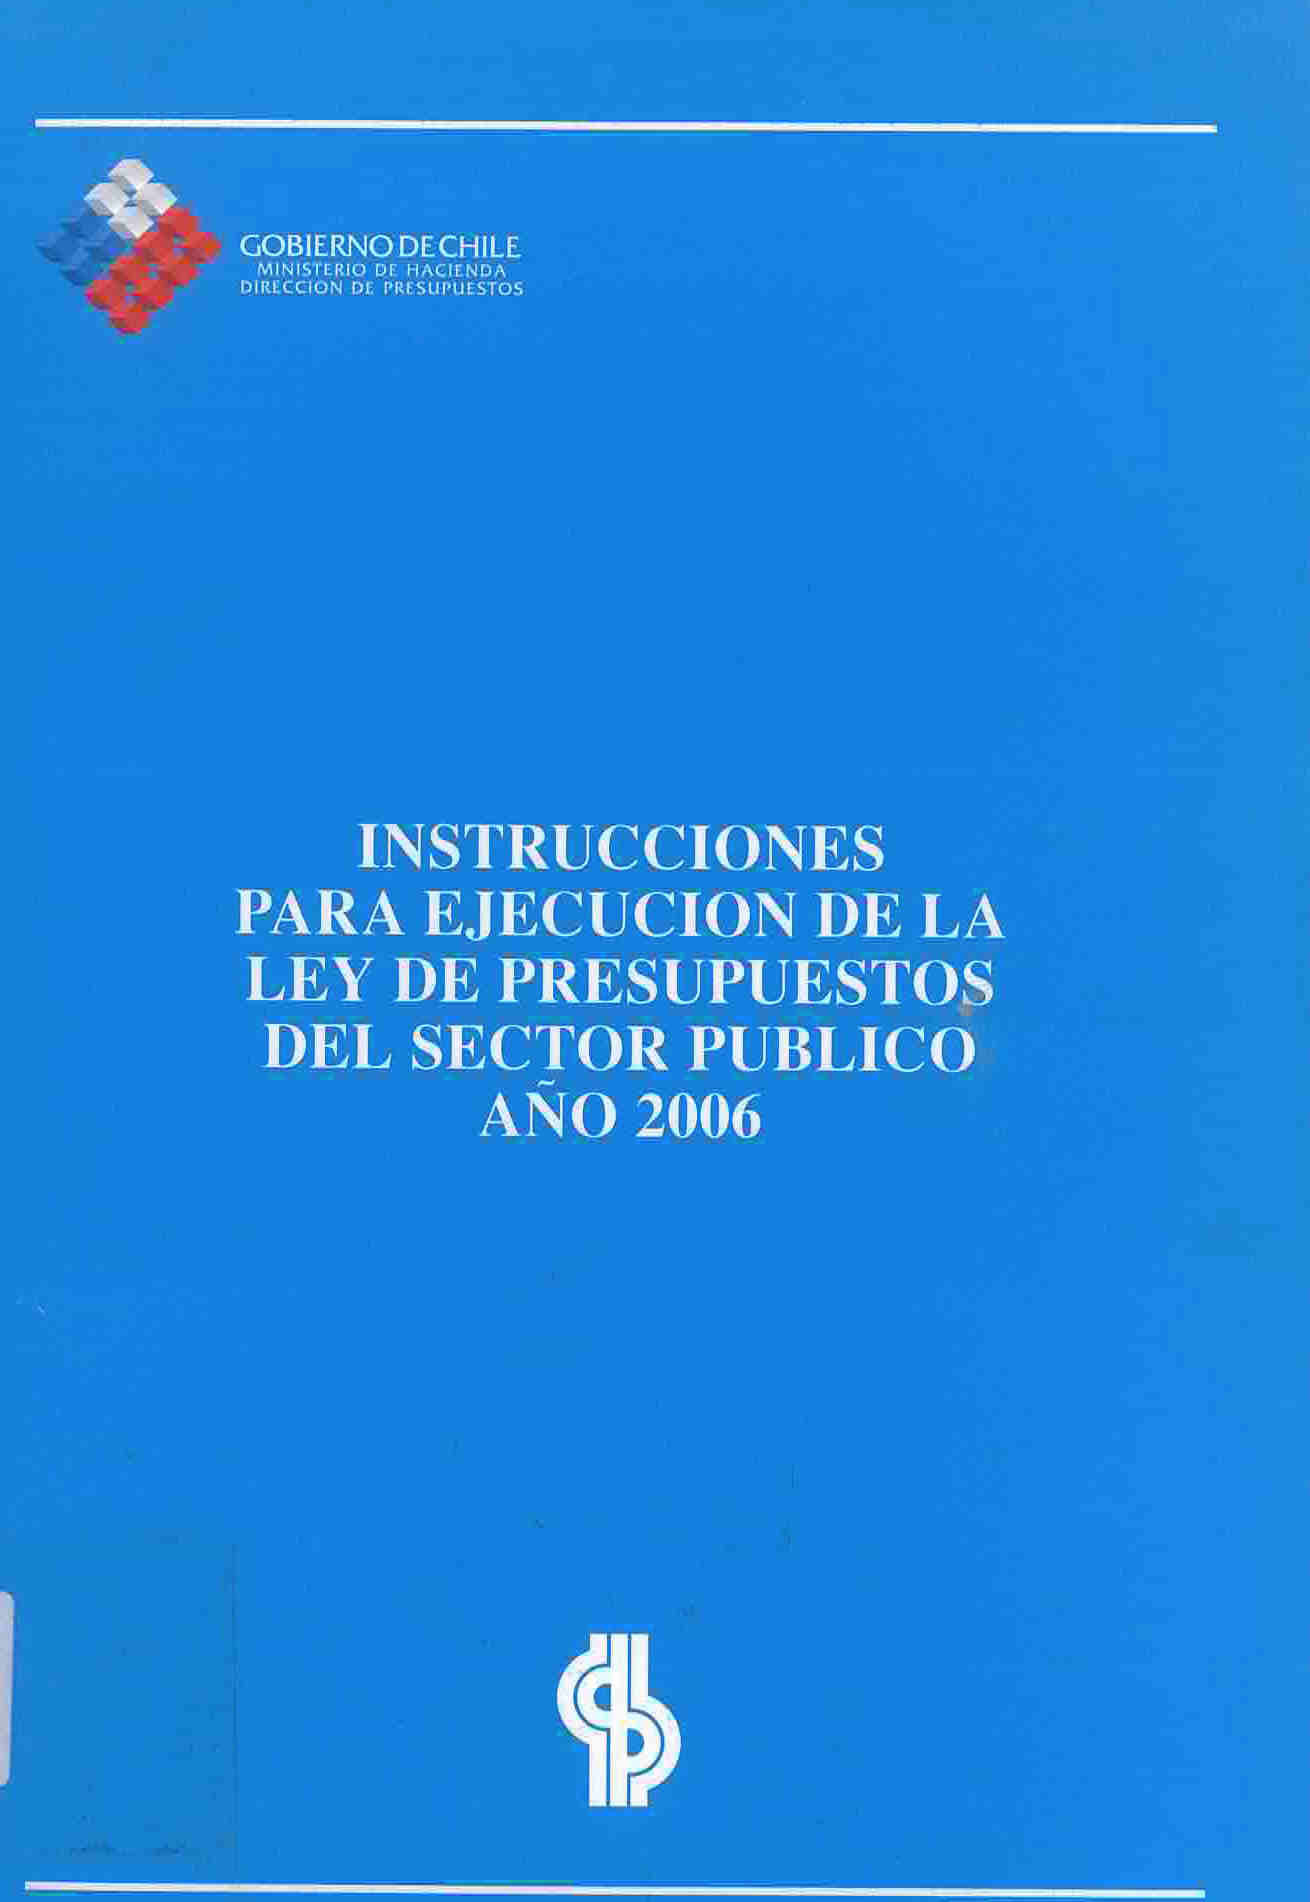 Instrucciones para ejecución de la ley de presupuestos del sector público año 2006